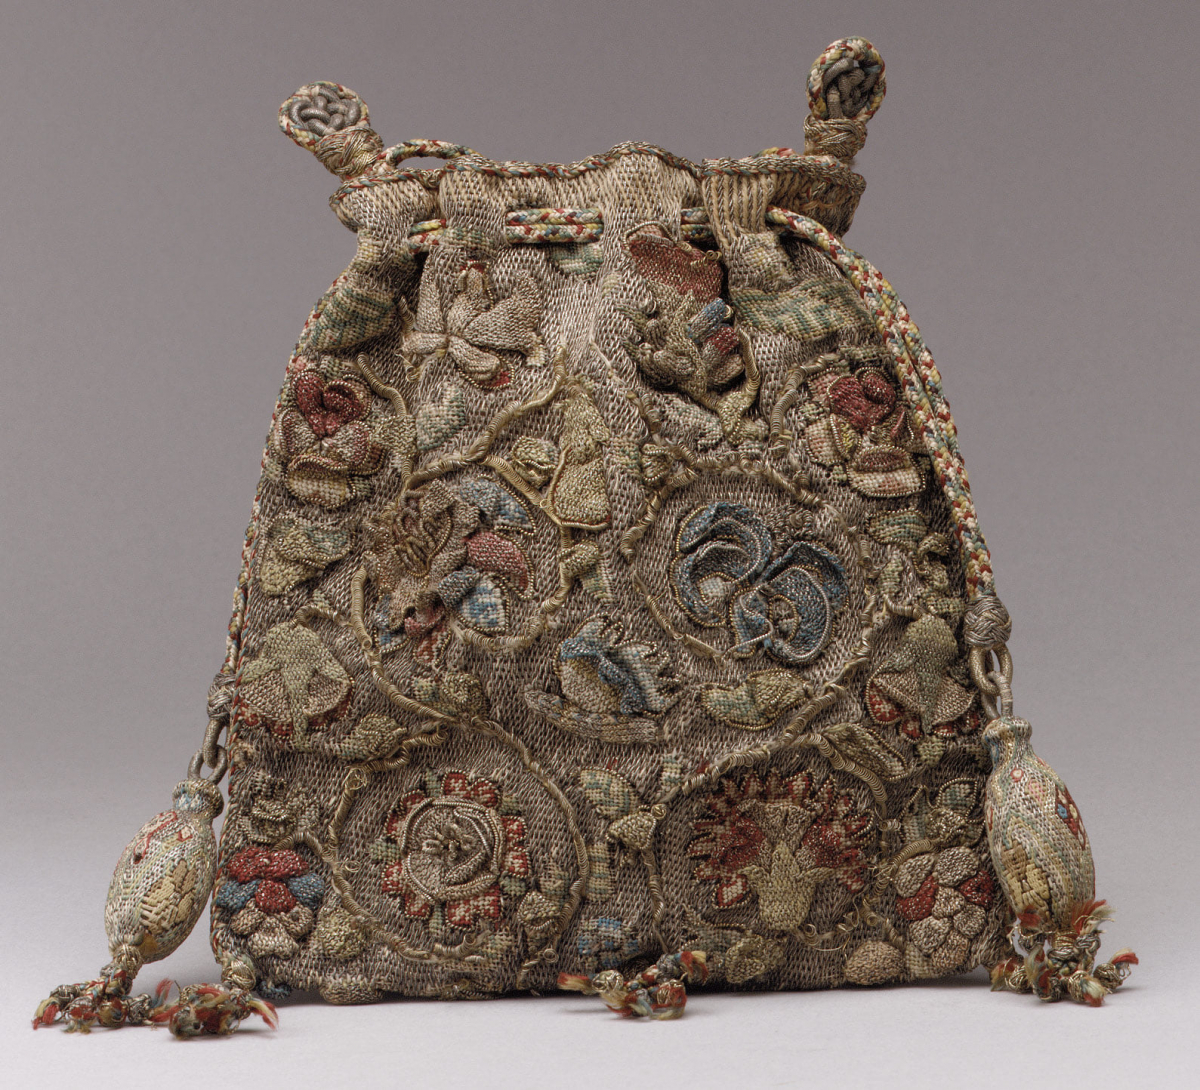 Сумочка (sweet bag) для того, щоб носити ароматні трави, які б приховували неприємний запах, остання чверть XVI ст., Музей Метрополітан, Нью-Йорк. Фото: Symbolon.